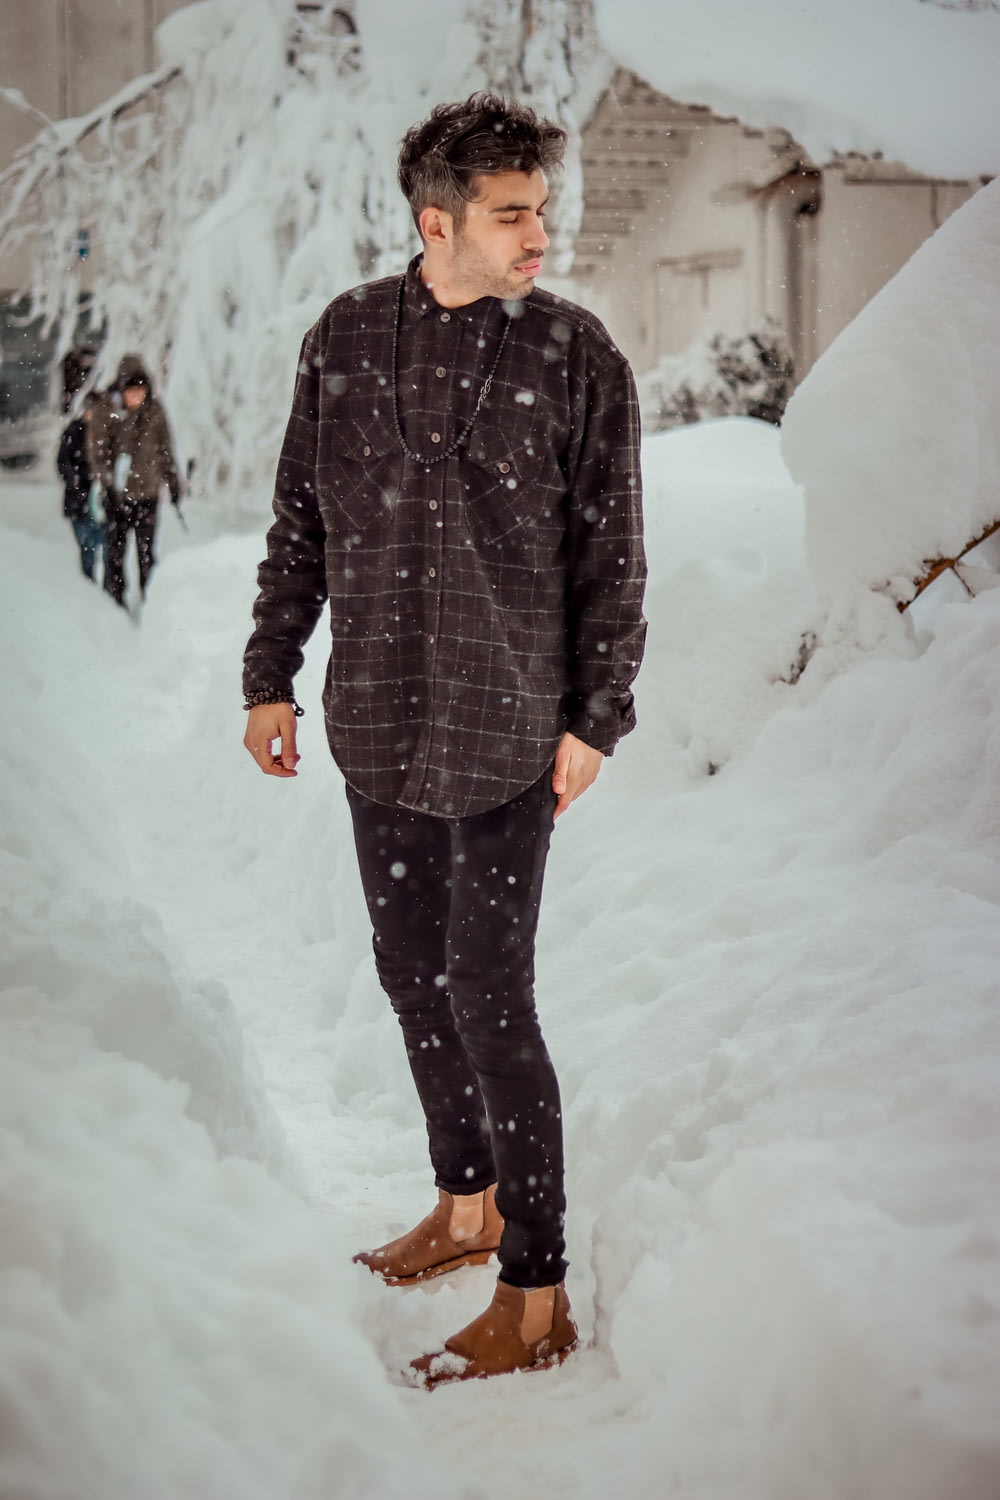 homem em casaco listrado preto e cinza em pé no chão coberto de neve durante o dia